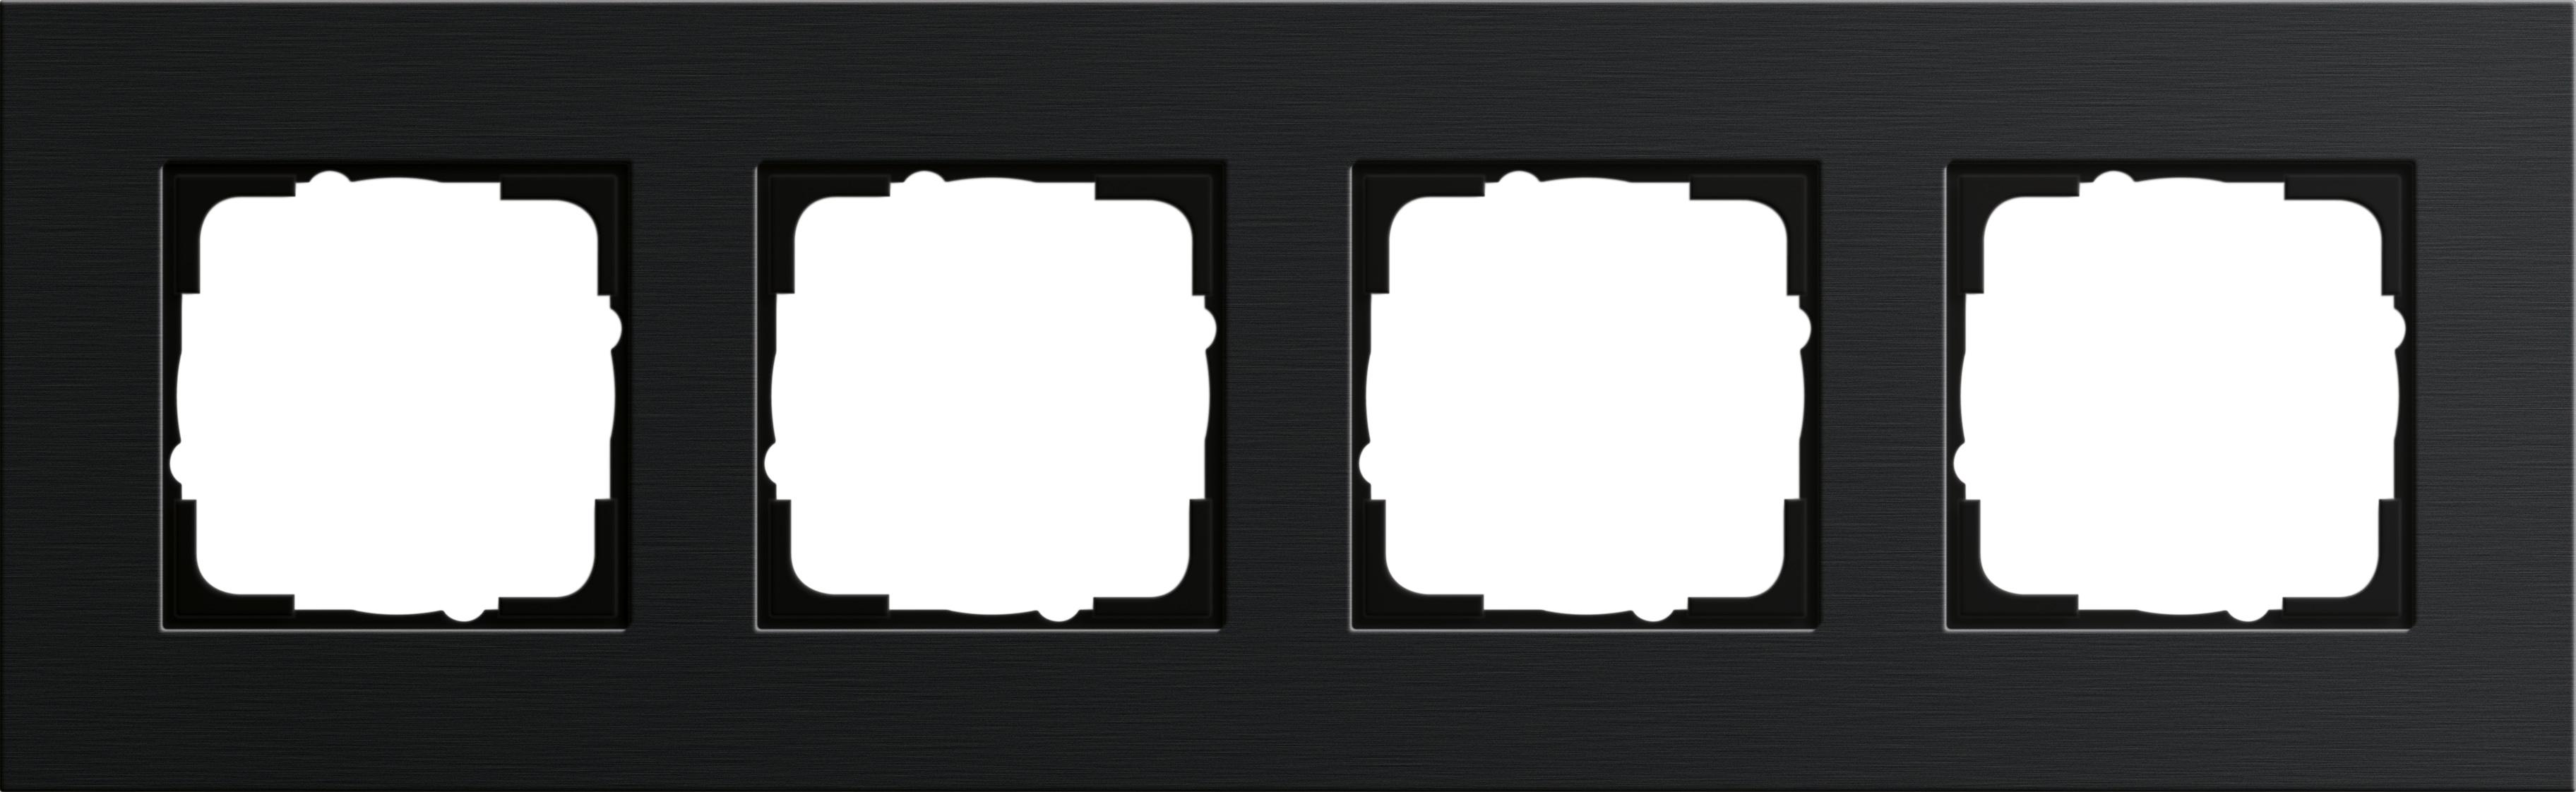  артикул 0214126 название Рамка четверная, Алюминий Черный (анодированный), серия Esprit